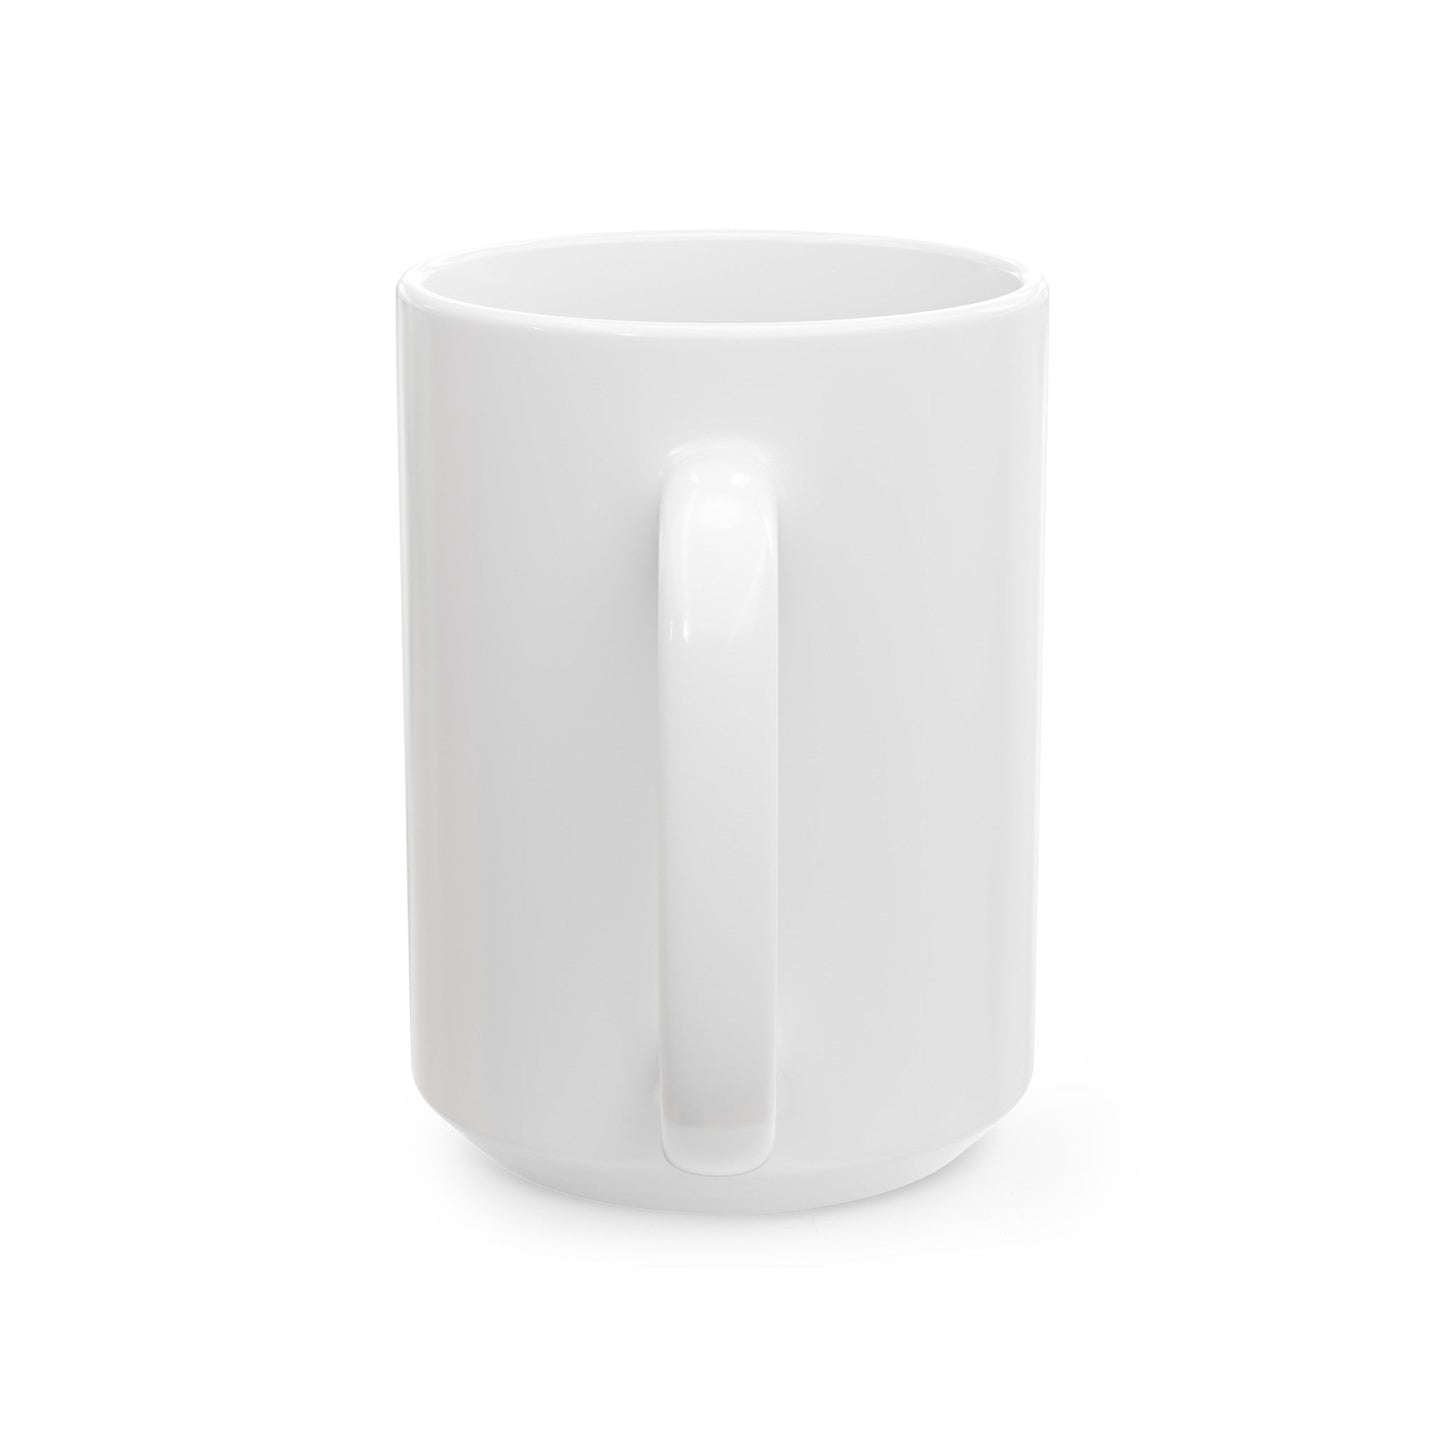 VFA 94 (U.S. Navy) White Coffee Mug-The Sticker Space